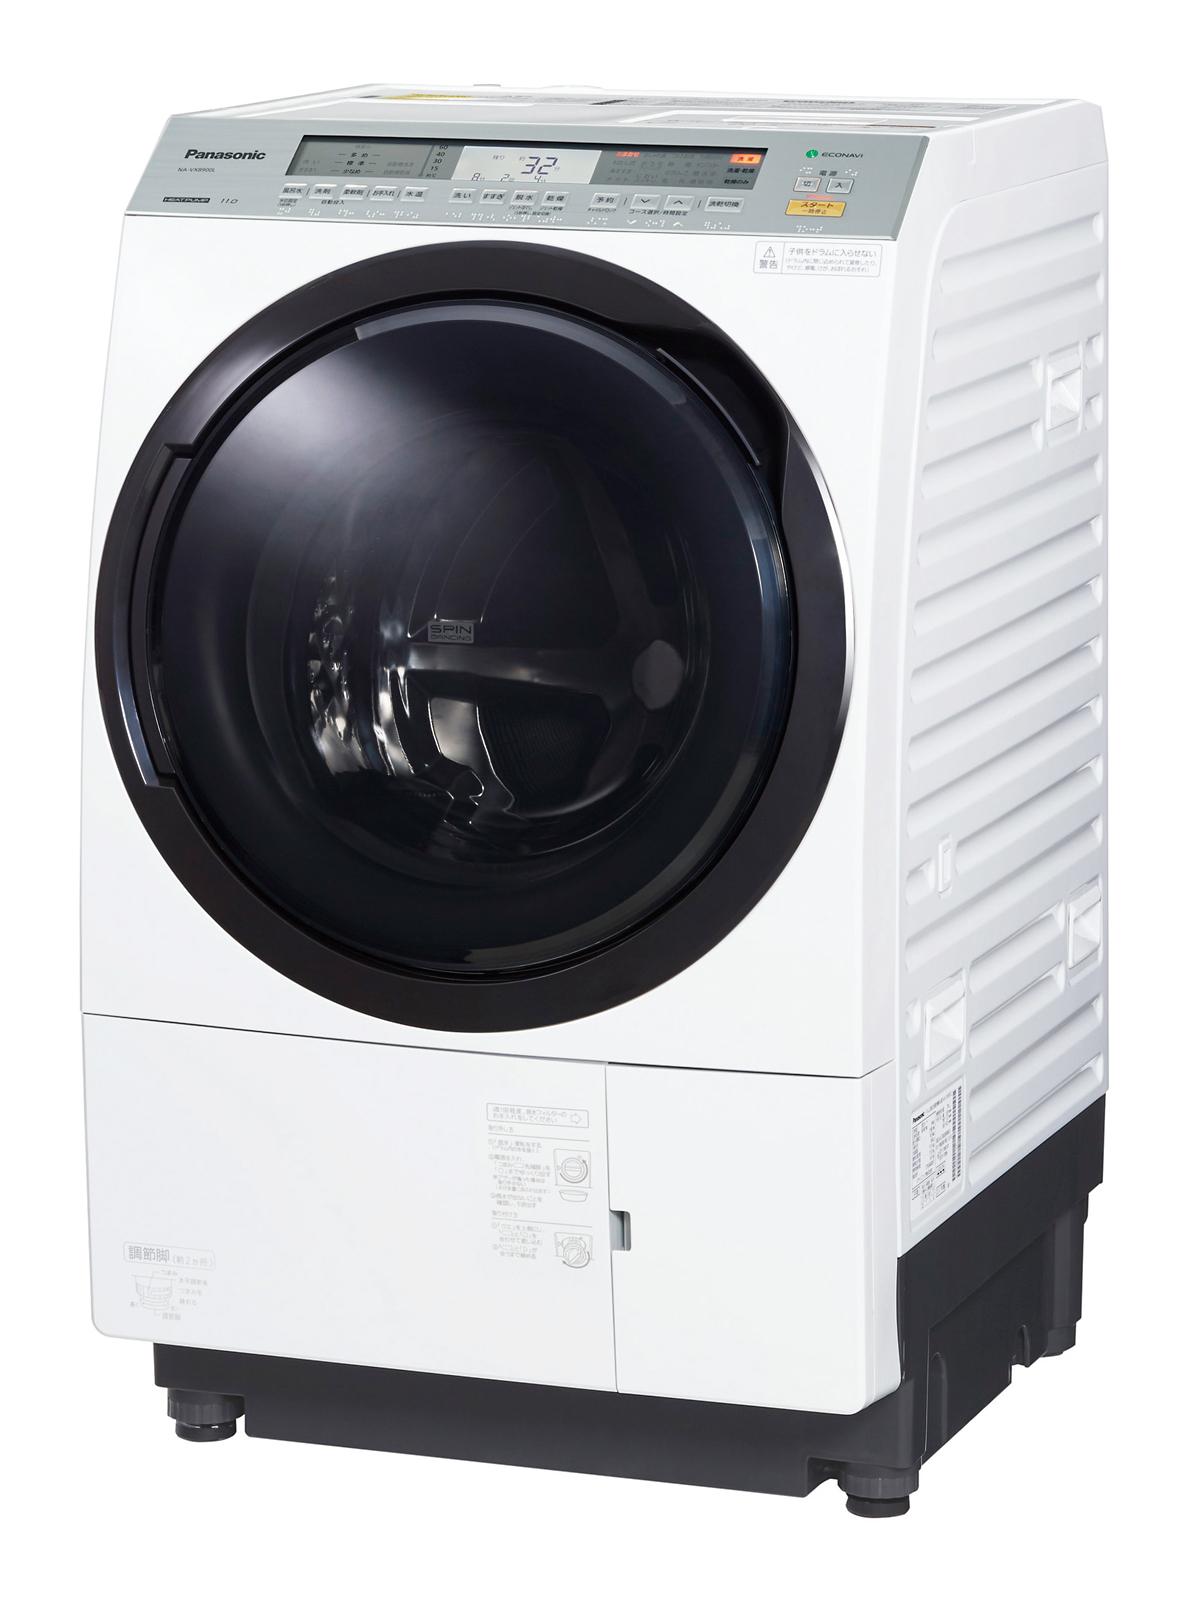 ななめドラム洗濯乾燥機 NA-VX9900L他4機種を発売 | 個人向け商品 